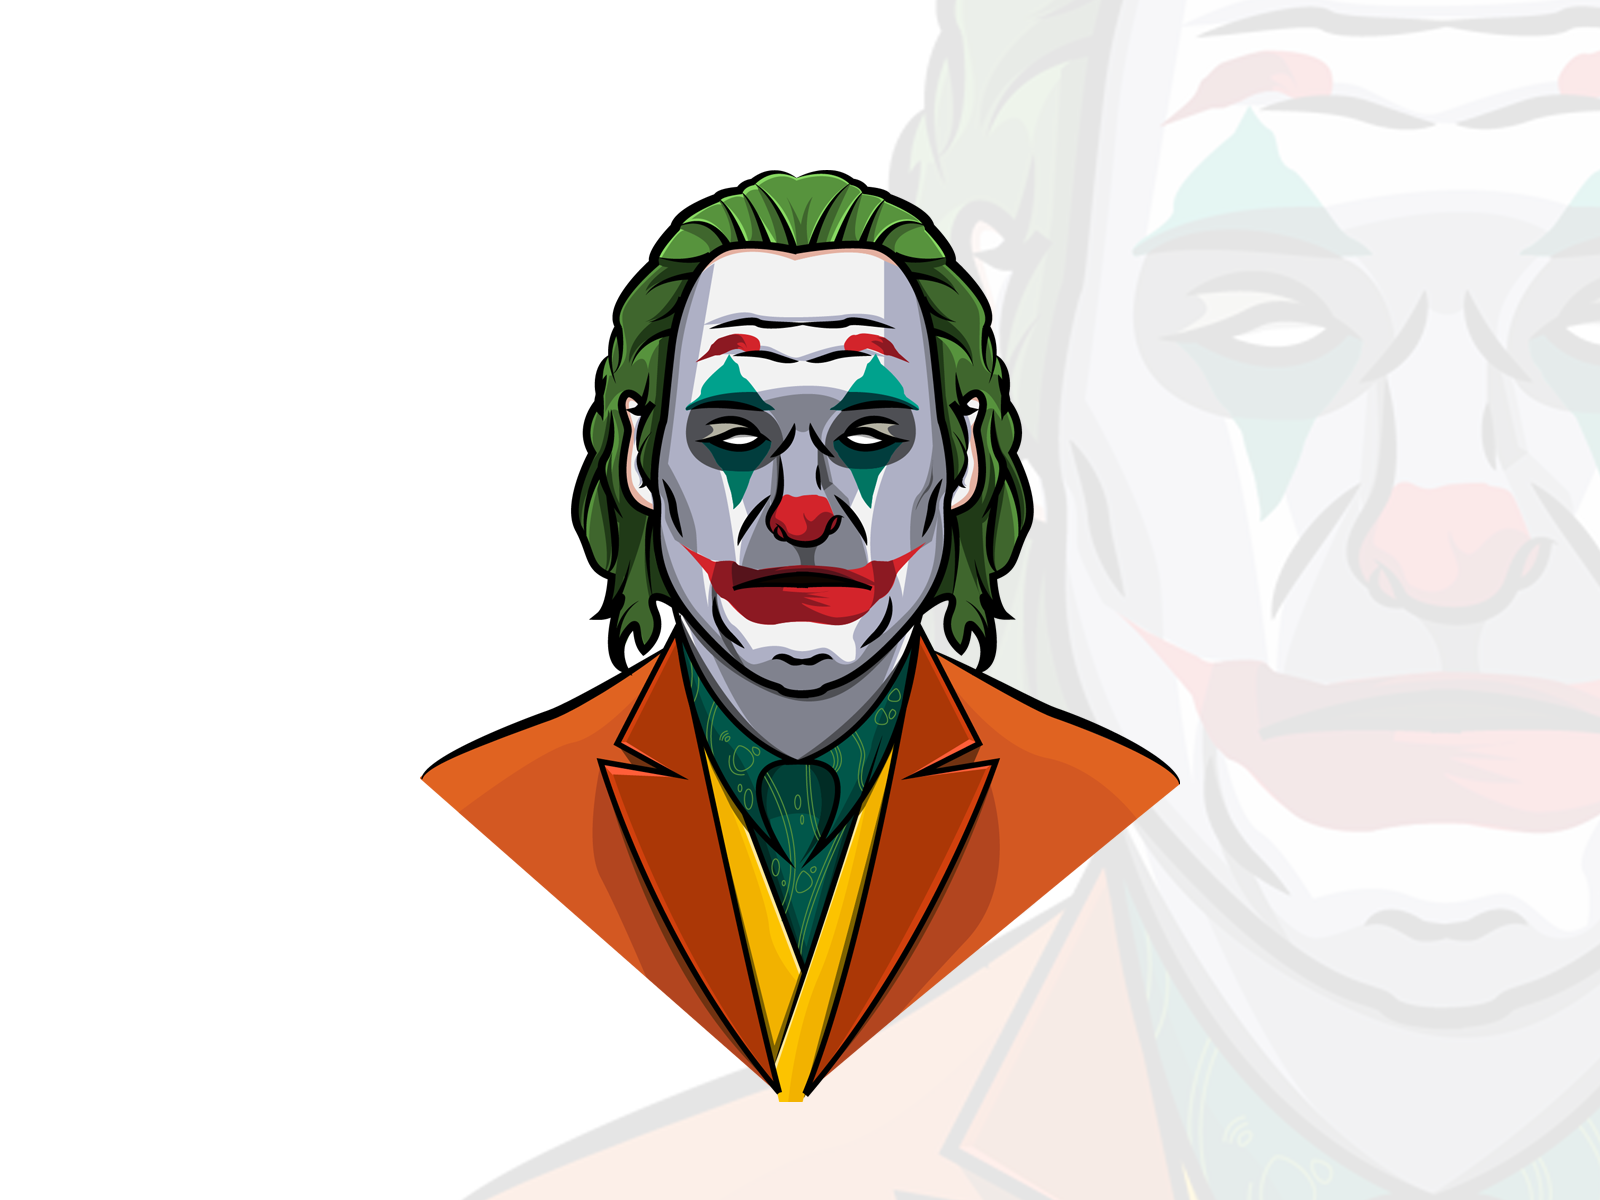 Joker by Hkartworks on Dribbble